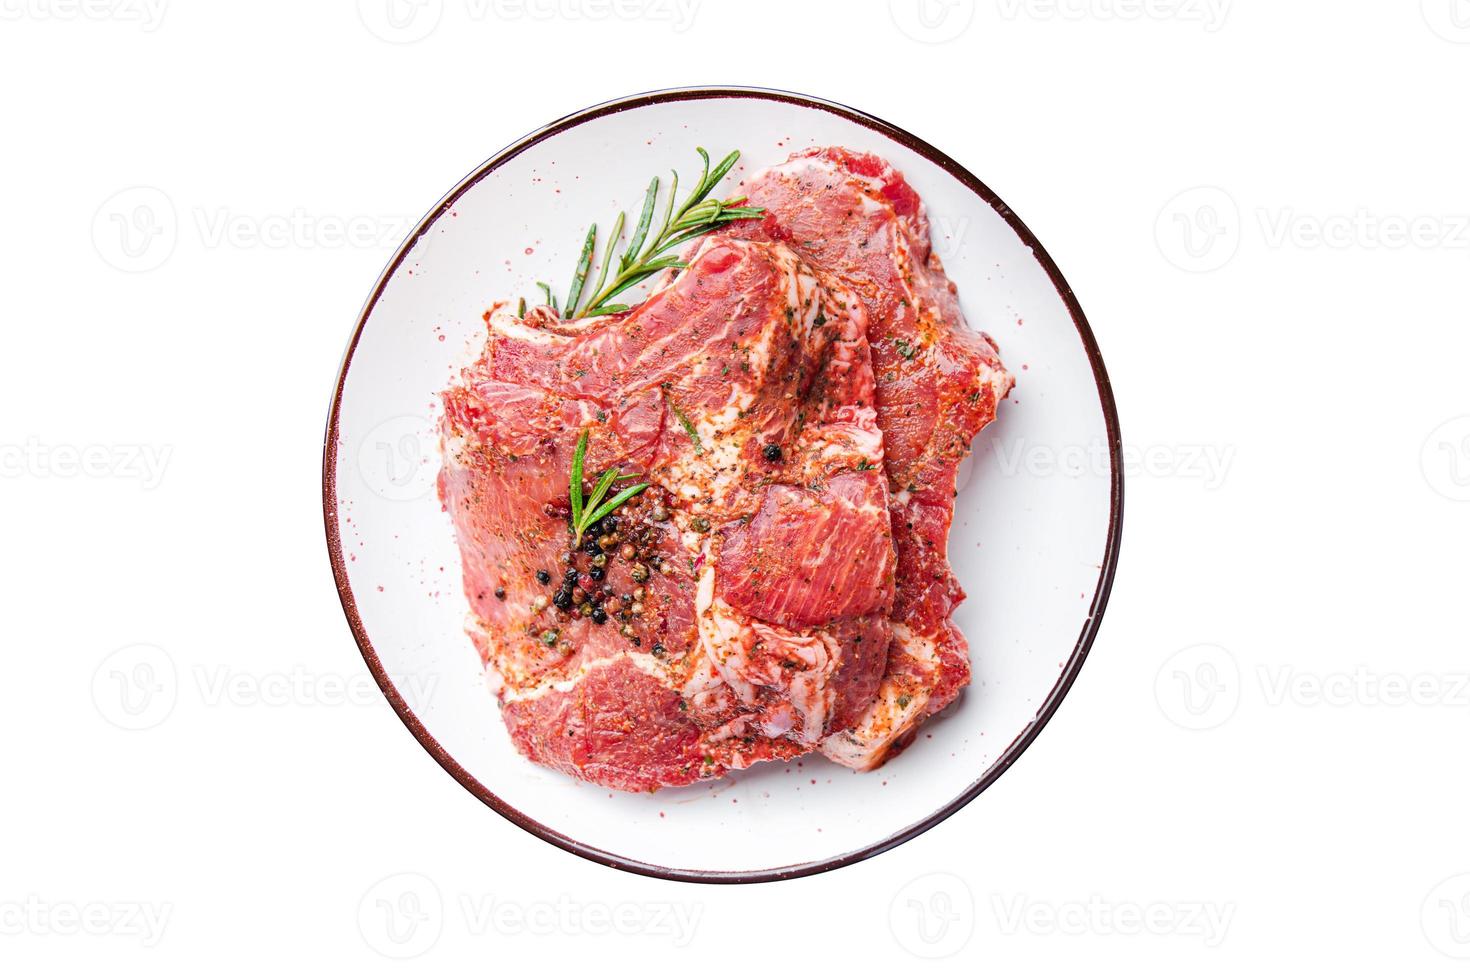 Schweinefleisch rohes Steak Fleisch Rindfleisch frische Mahlzeit Essen Diät Snack auf dem Tisch Kopie Raum Essen Hintergrund foto